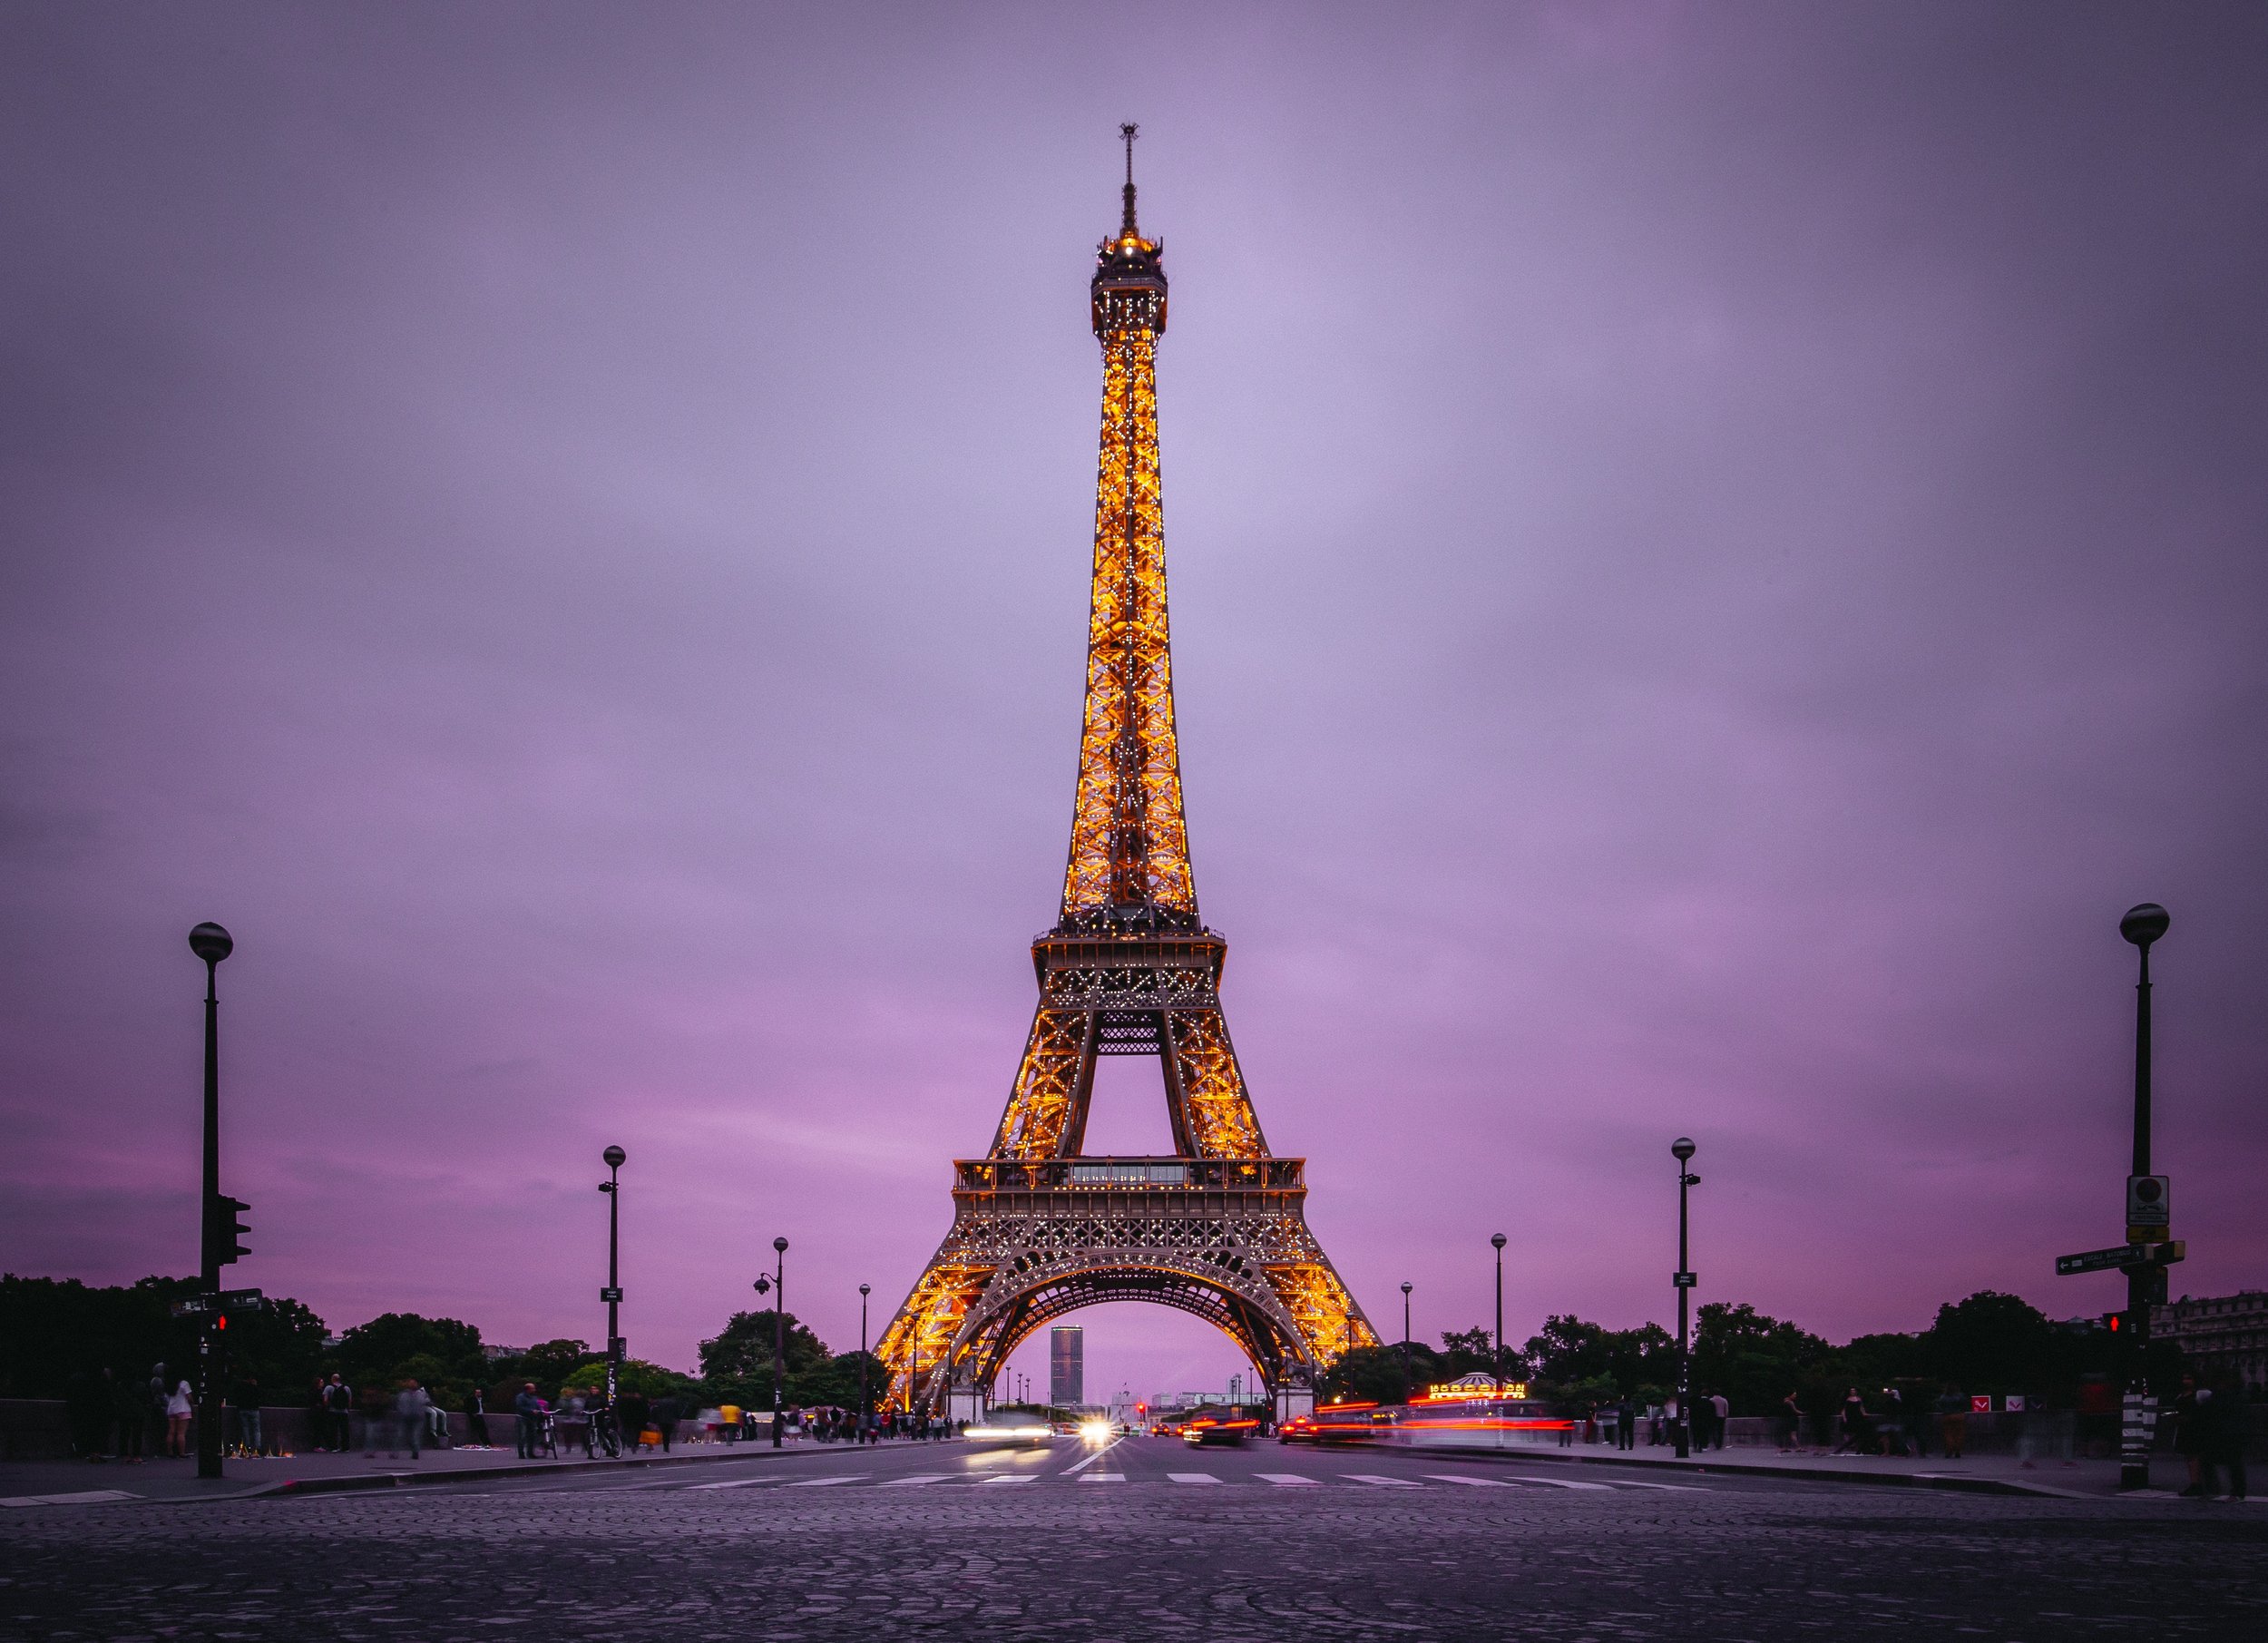 La Grande Epicerie de Paris - Good Morning Paris The Blog